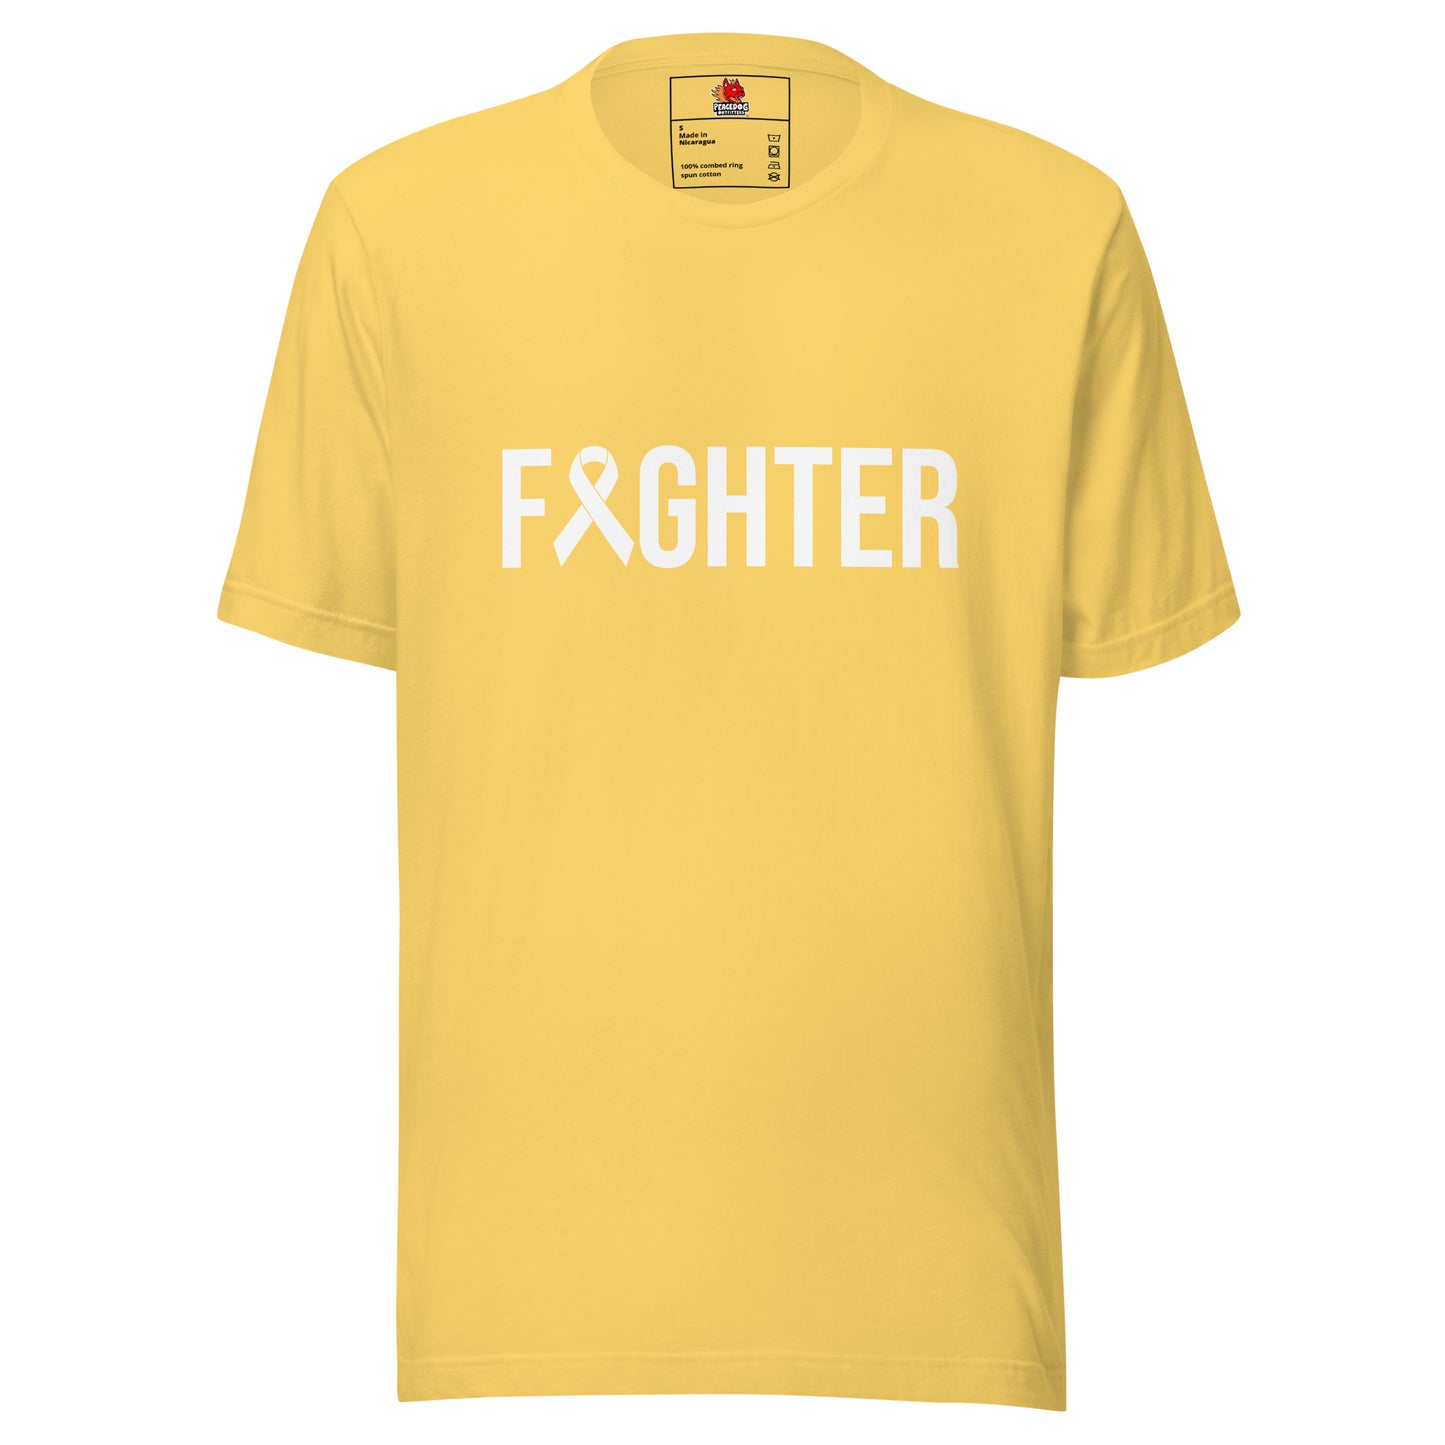 Fighter T-shirt